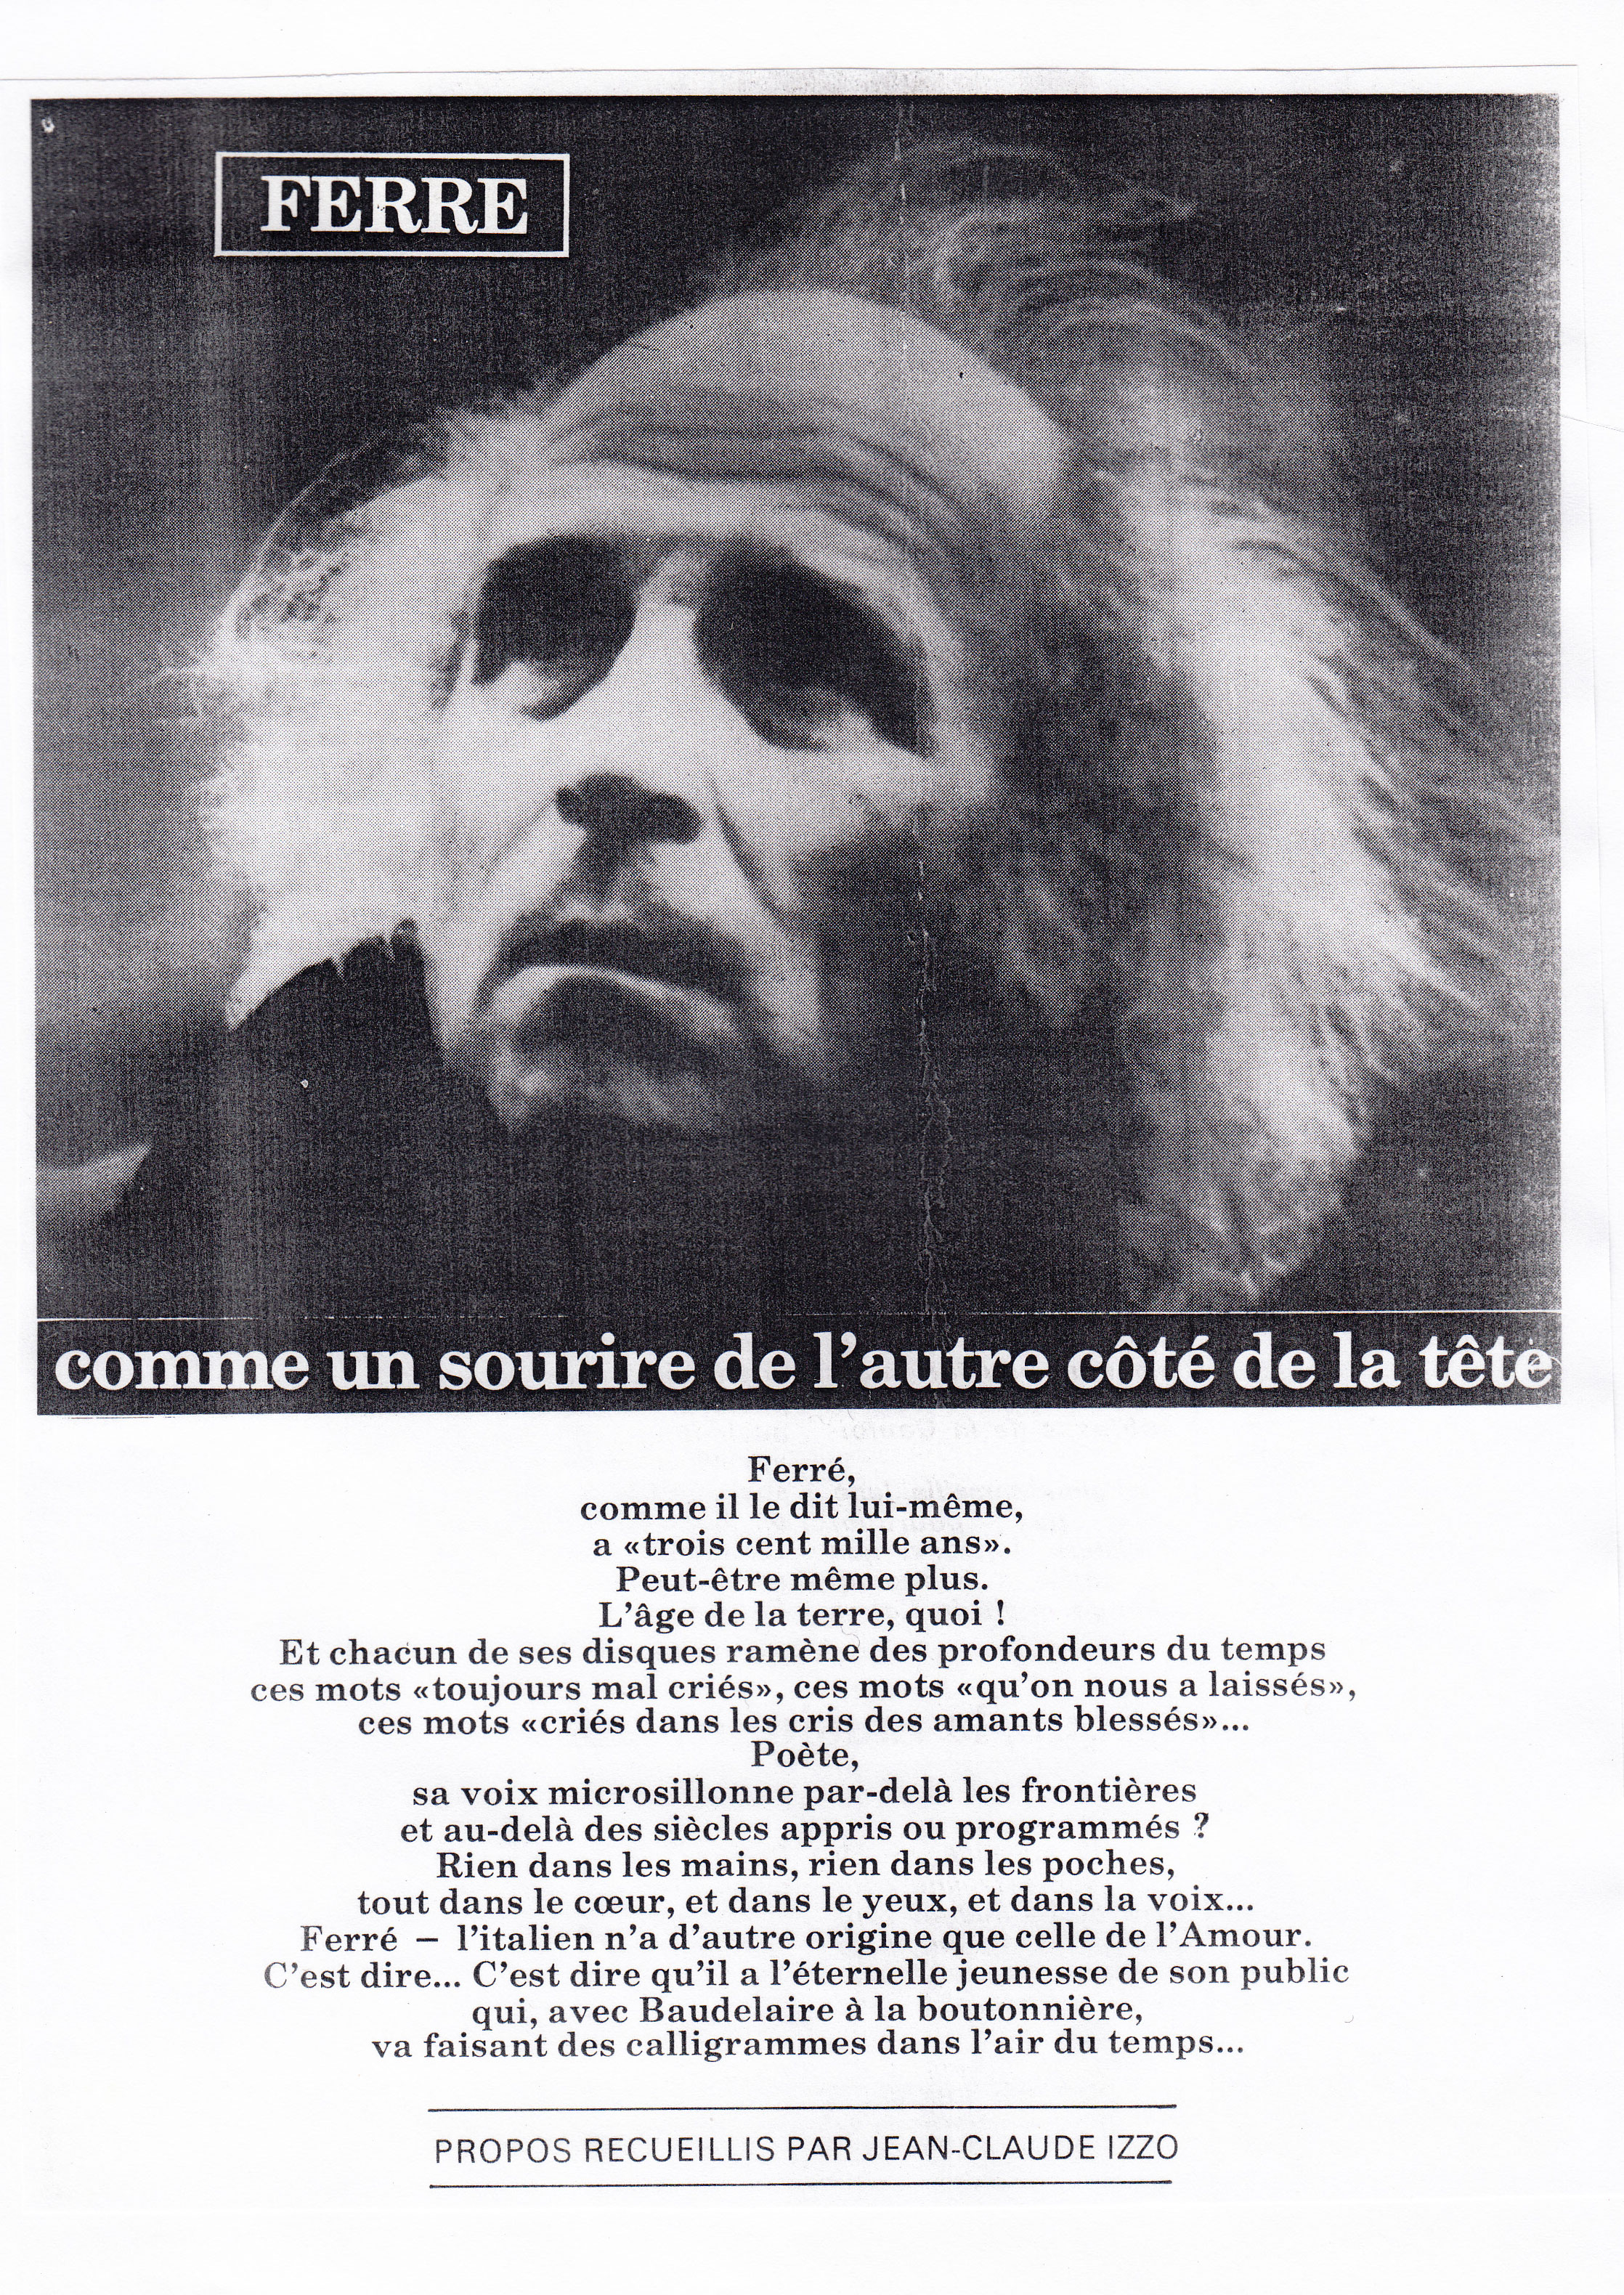 Léo Ferré - La Vie mutualiste de juin 1981